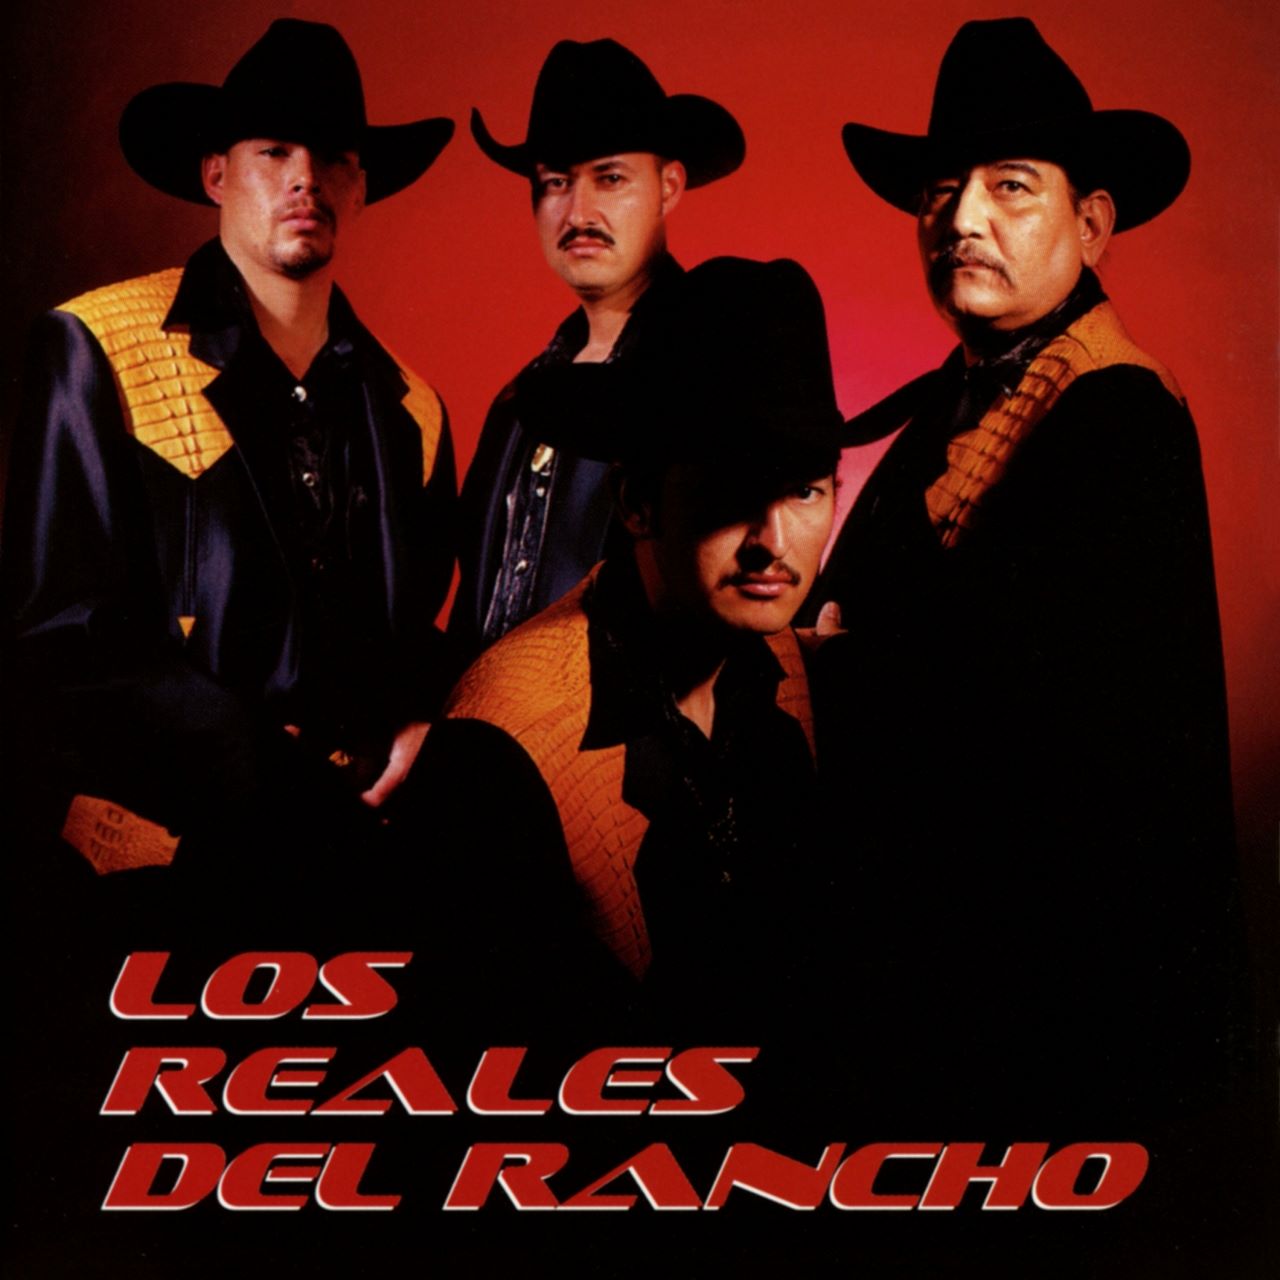 Los Reales Del Rancho - Los Reales Del Rancho cover album